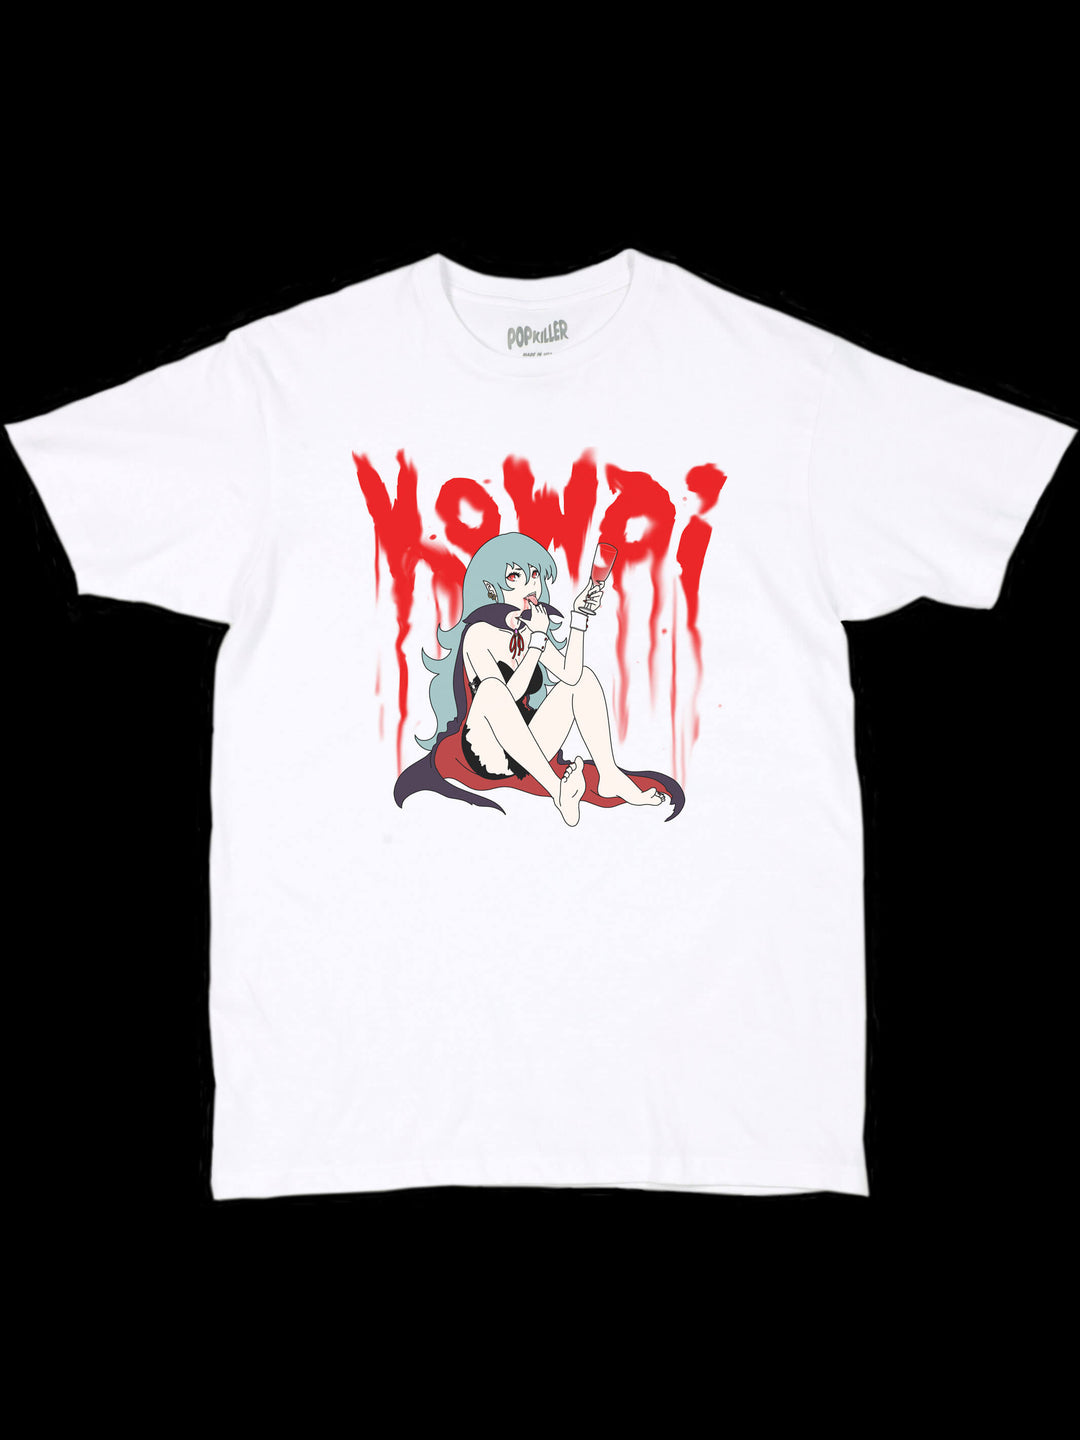 Kowai anime vampire graphic t-shirt.